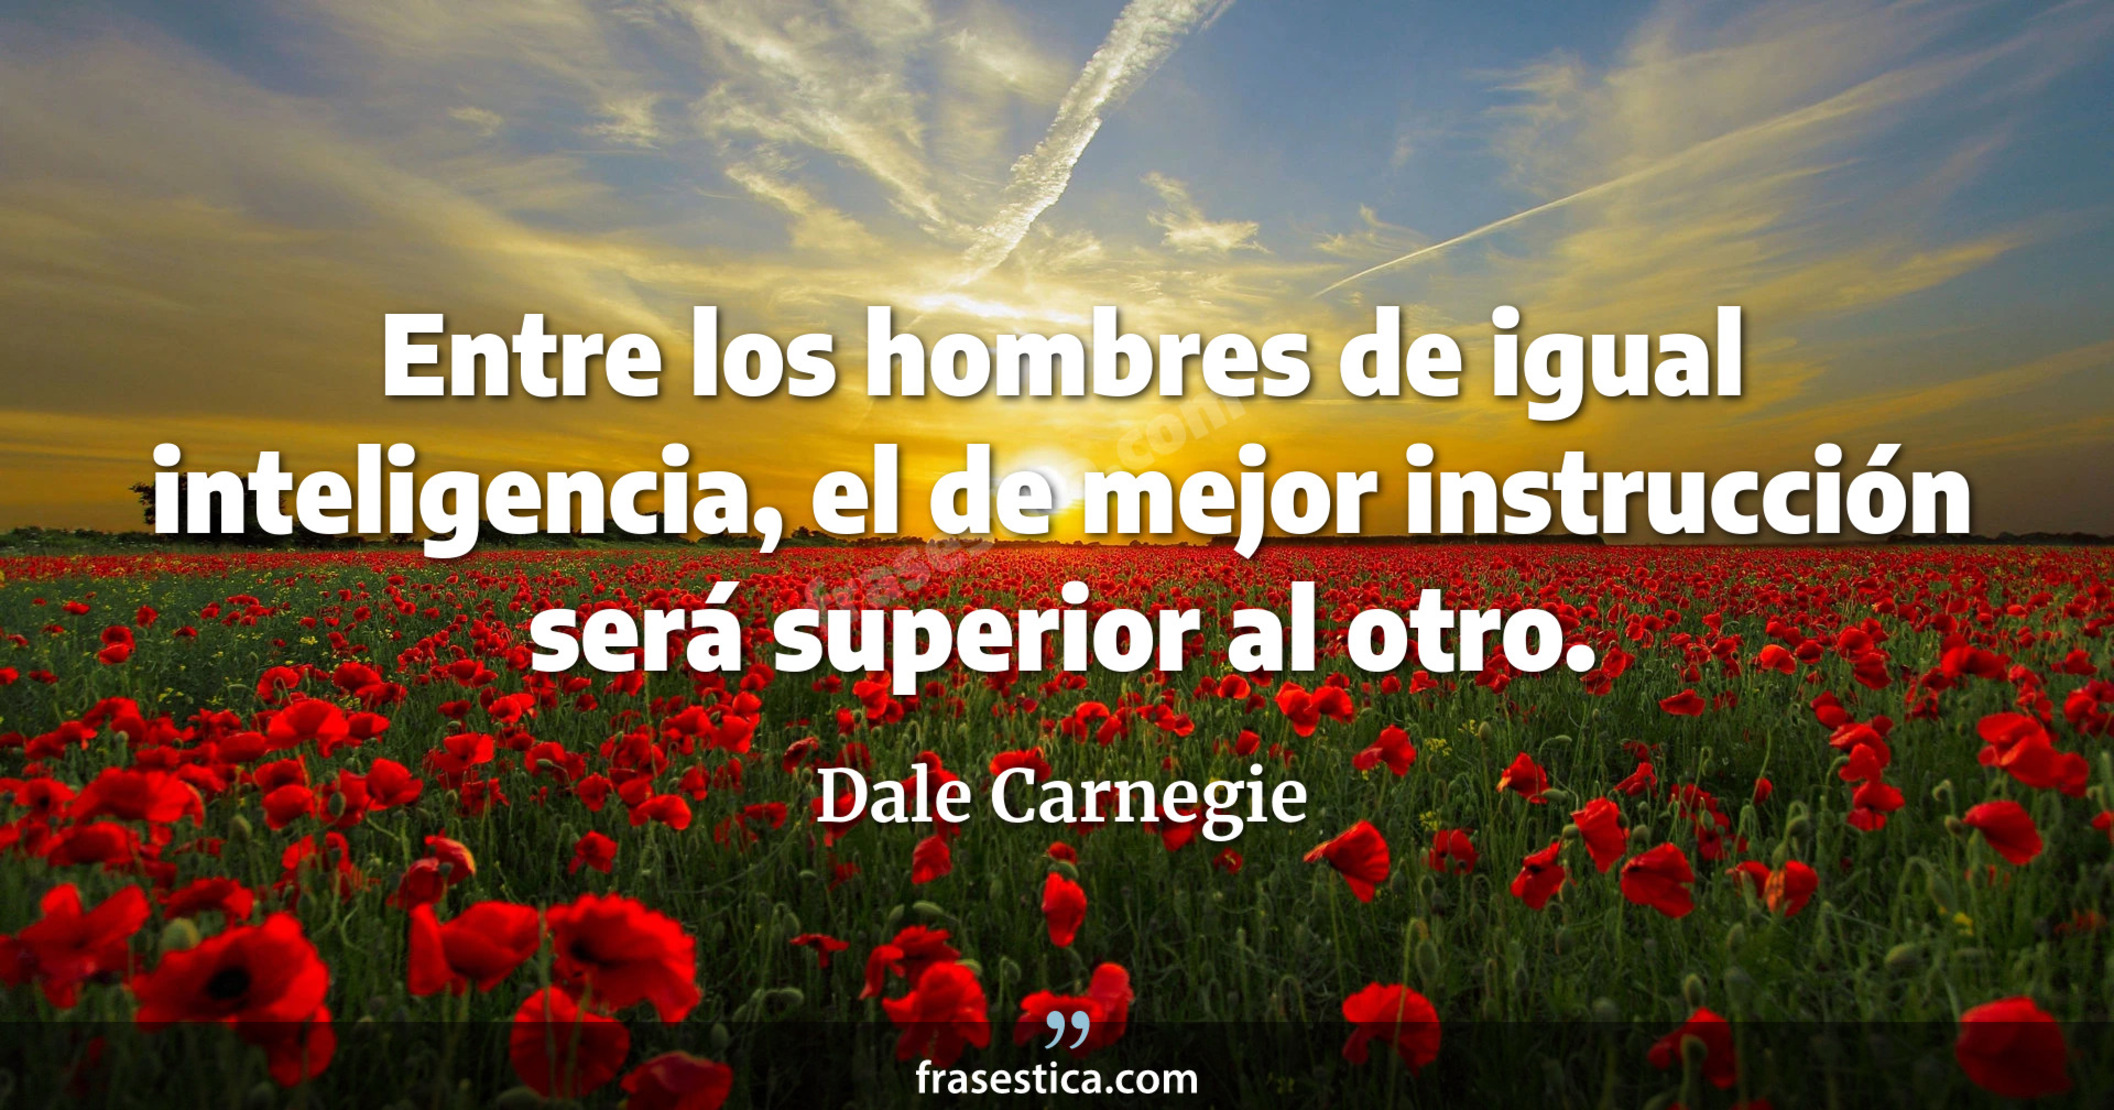 Entre los hombres de igual inteligencia, el de mejor instrucción será superior al otro. - Dale Carnegie